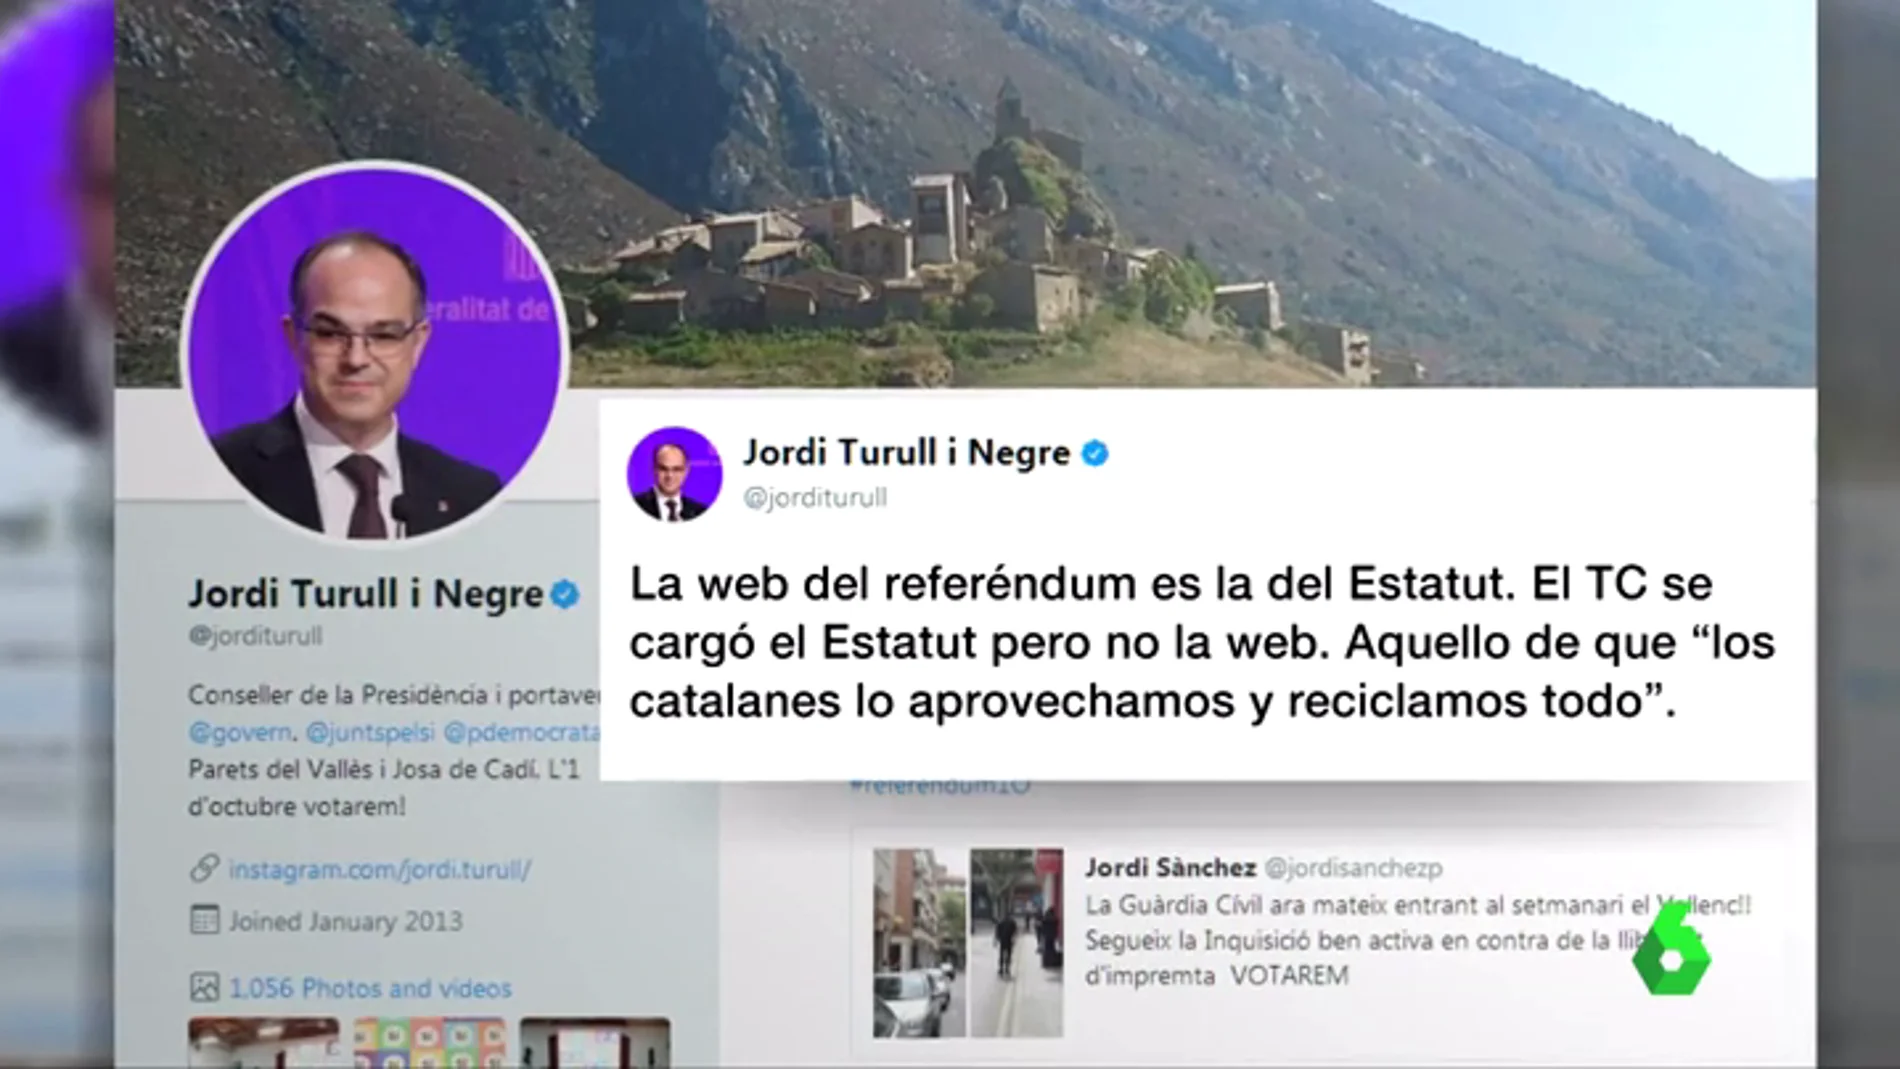 Jordi Turull responde a Montoro: "La web del referéndum es la misma que la del Estatut"